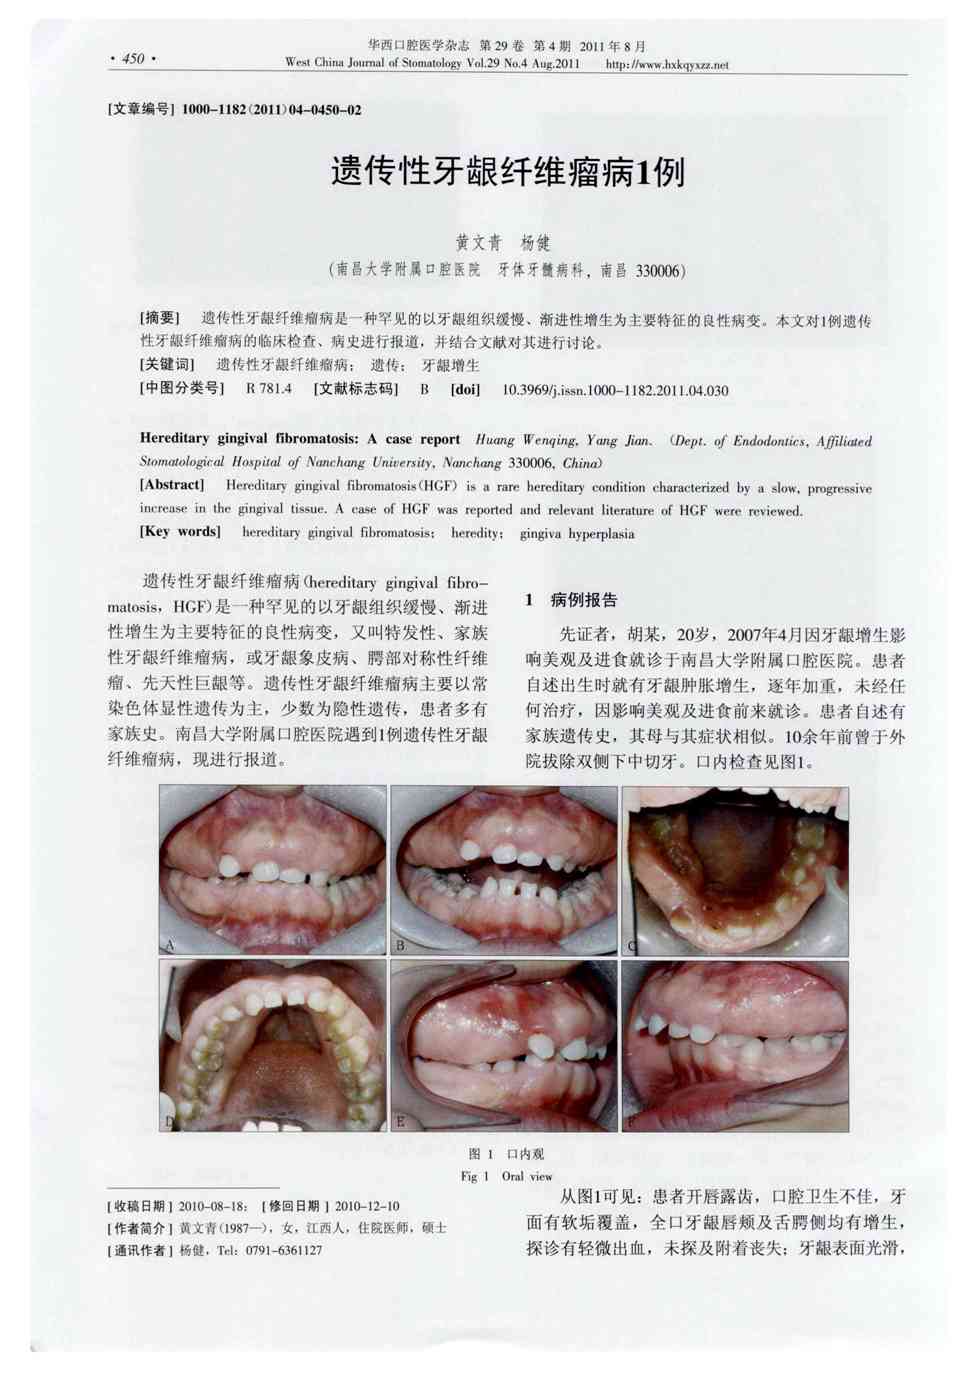 期刊遗传性牙龈纤维瘤病1例被引量:4    遗传性牙龈纤维瘤病是一种